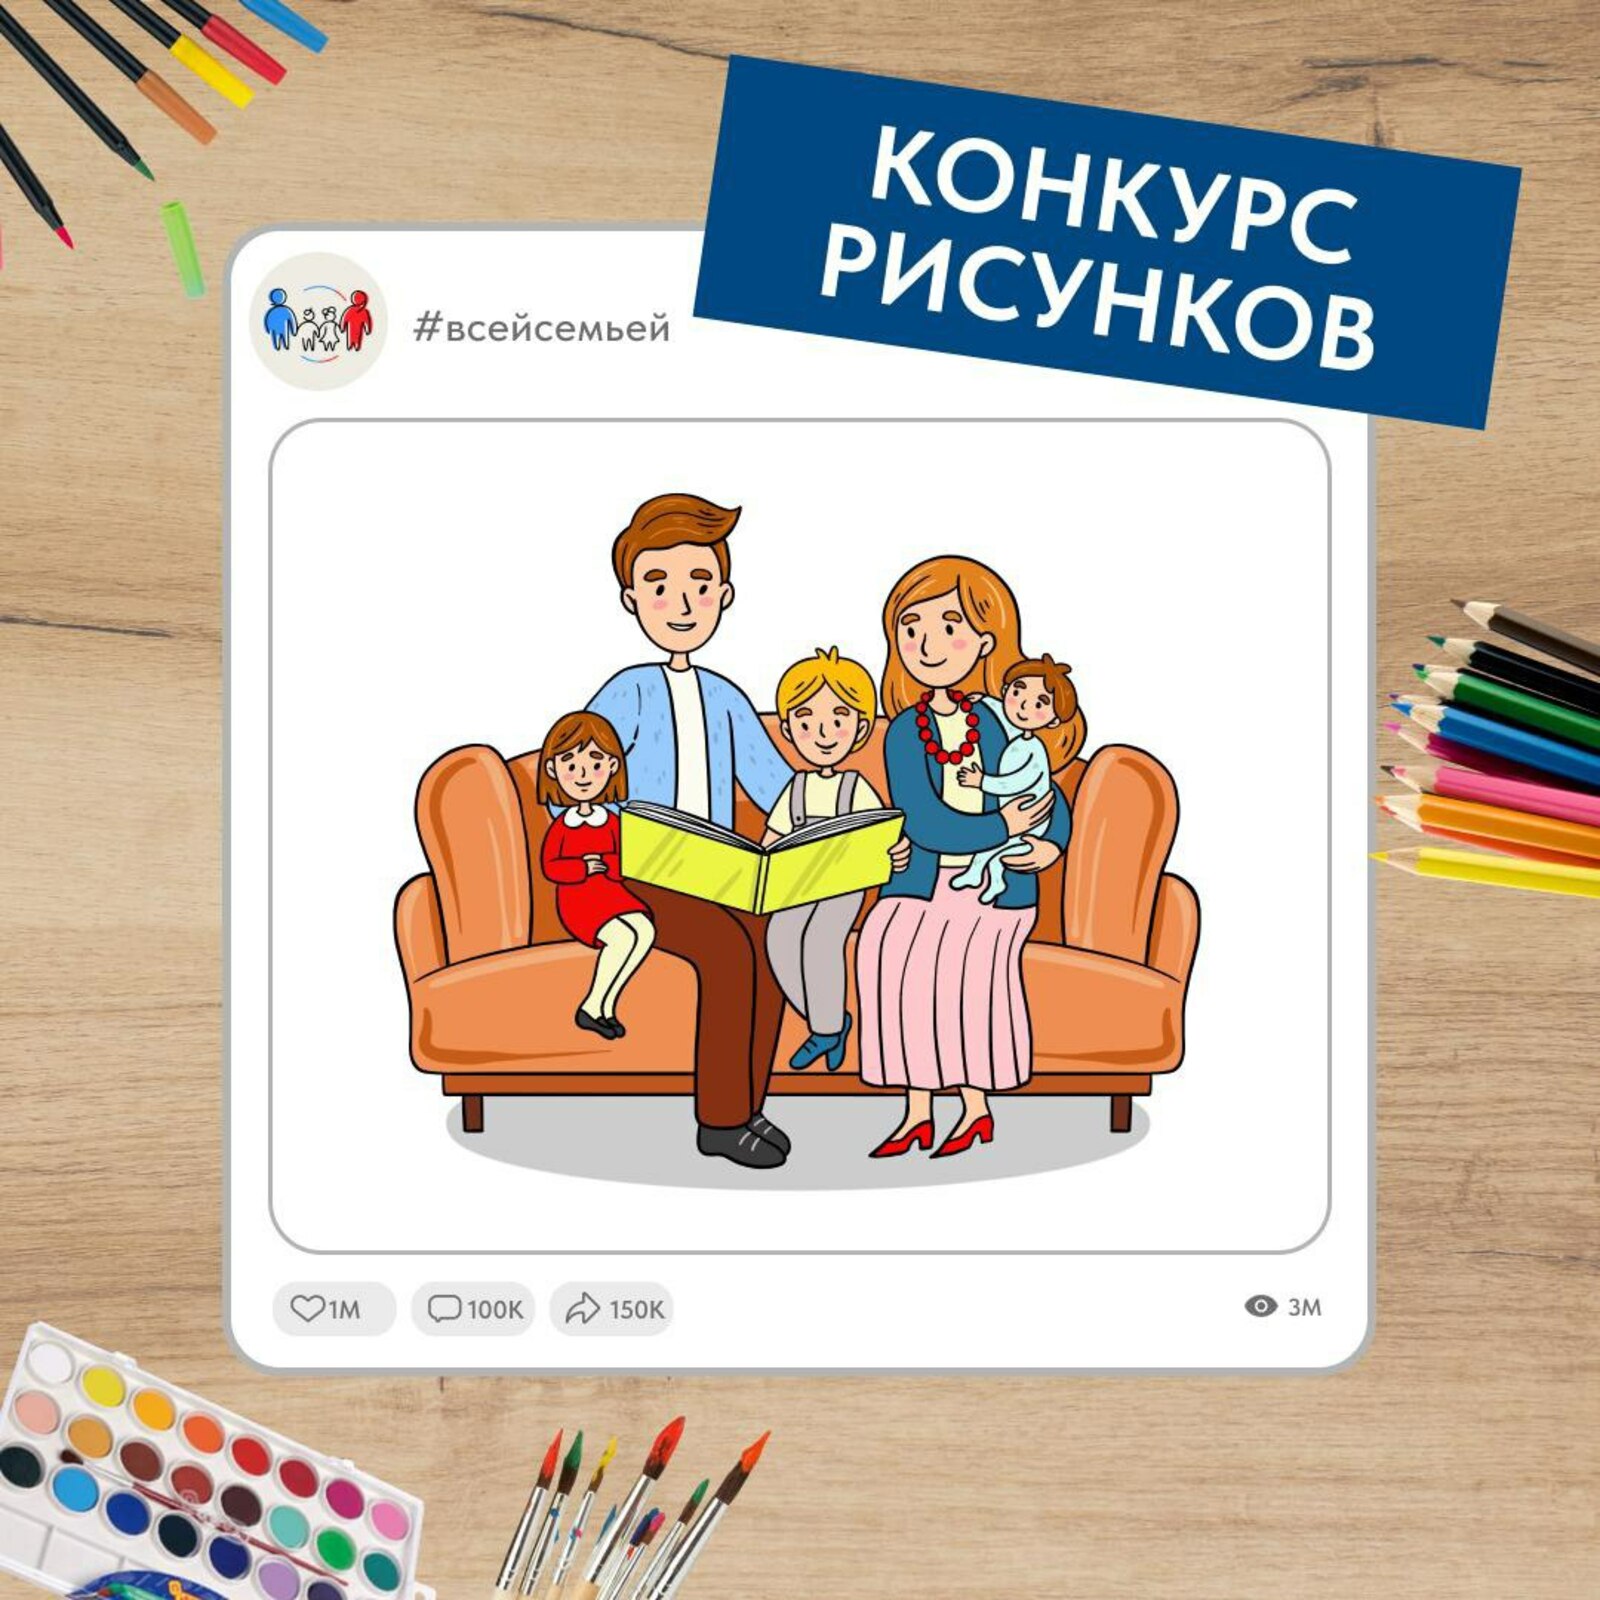 Российский проект "Всей семьей" запустил новый конкурс для детей и их родителей